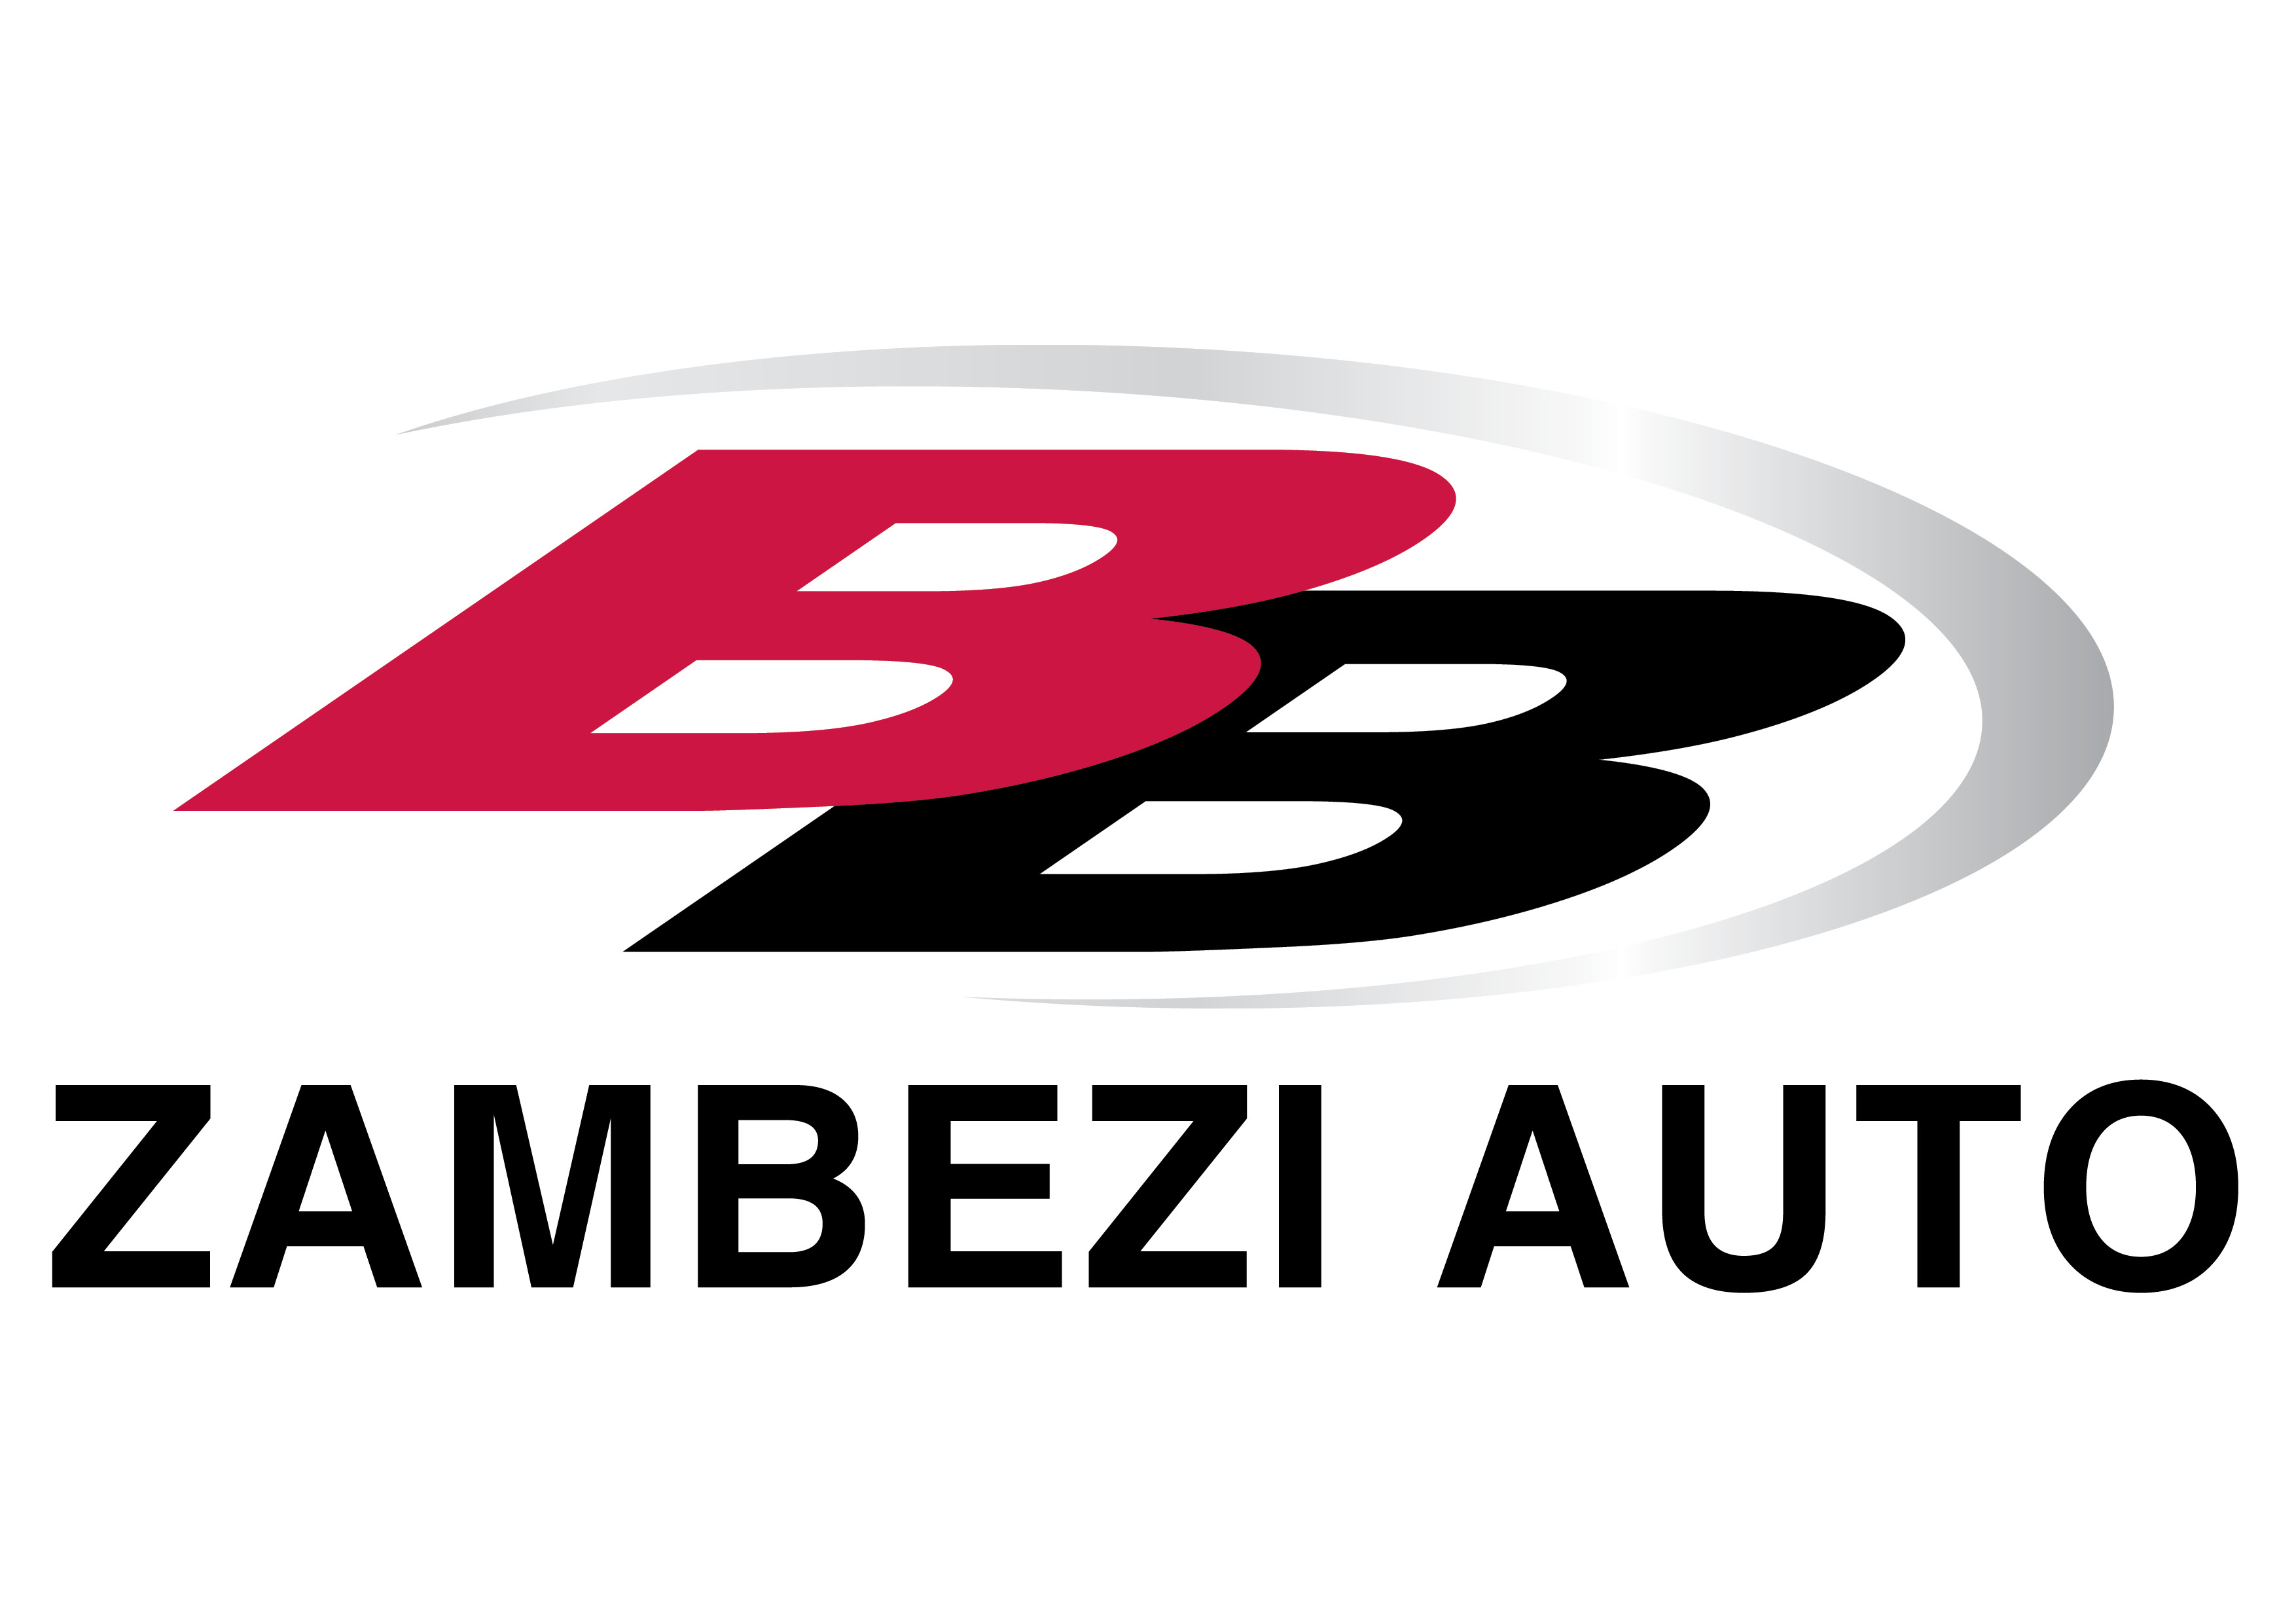 Find BB Zambezi Honda's adverts listed on Junk Mail